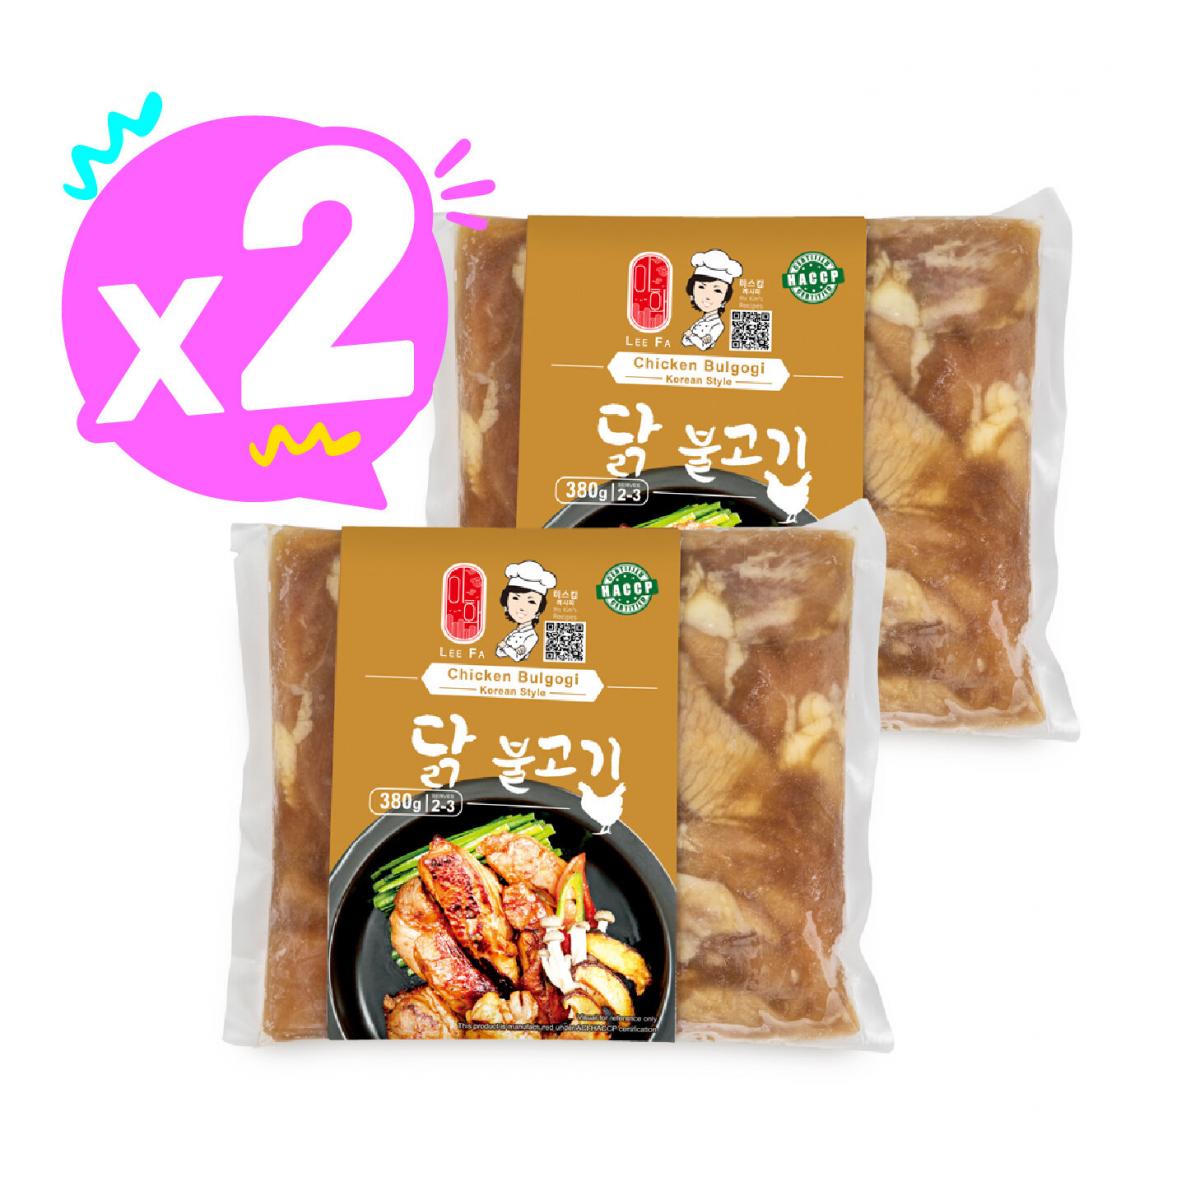 Chicken Bulgogi ORIGINAL X 2 PACKS